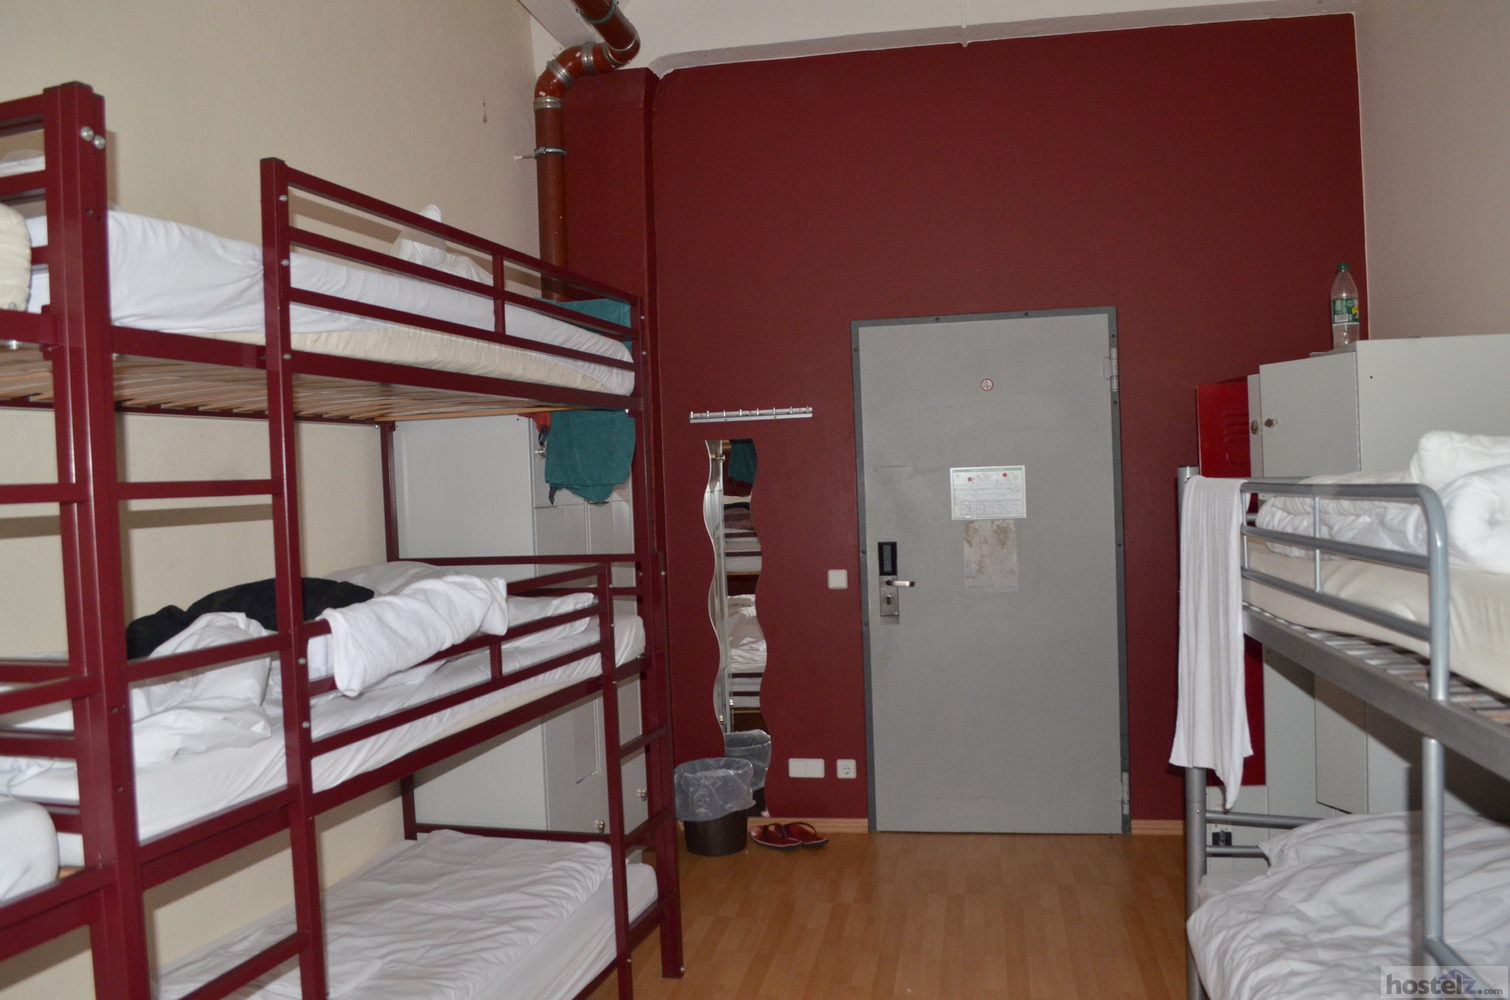 10-bed mixed dorm